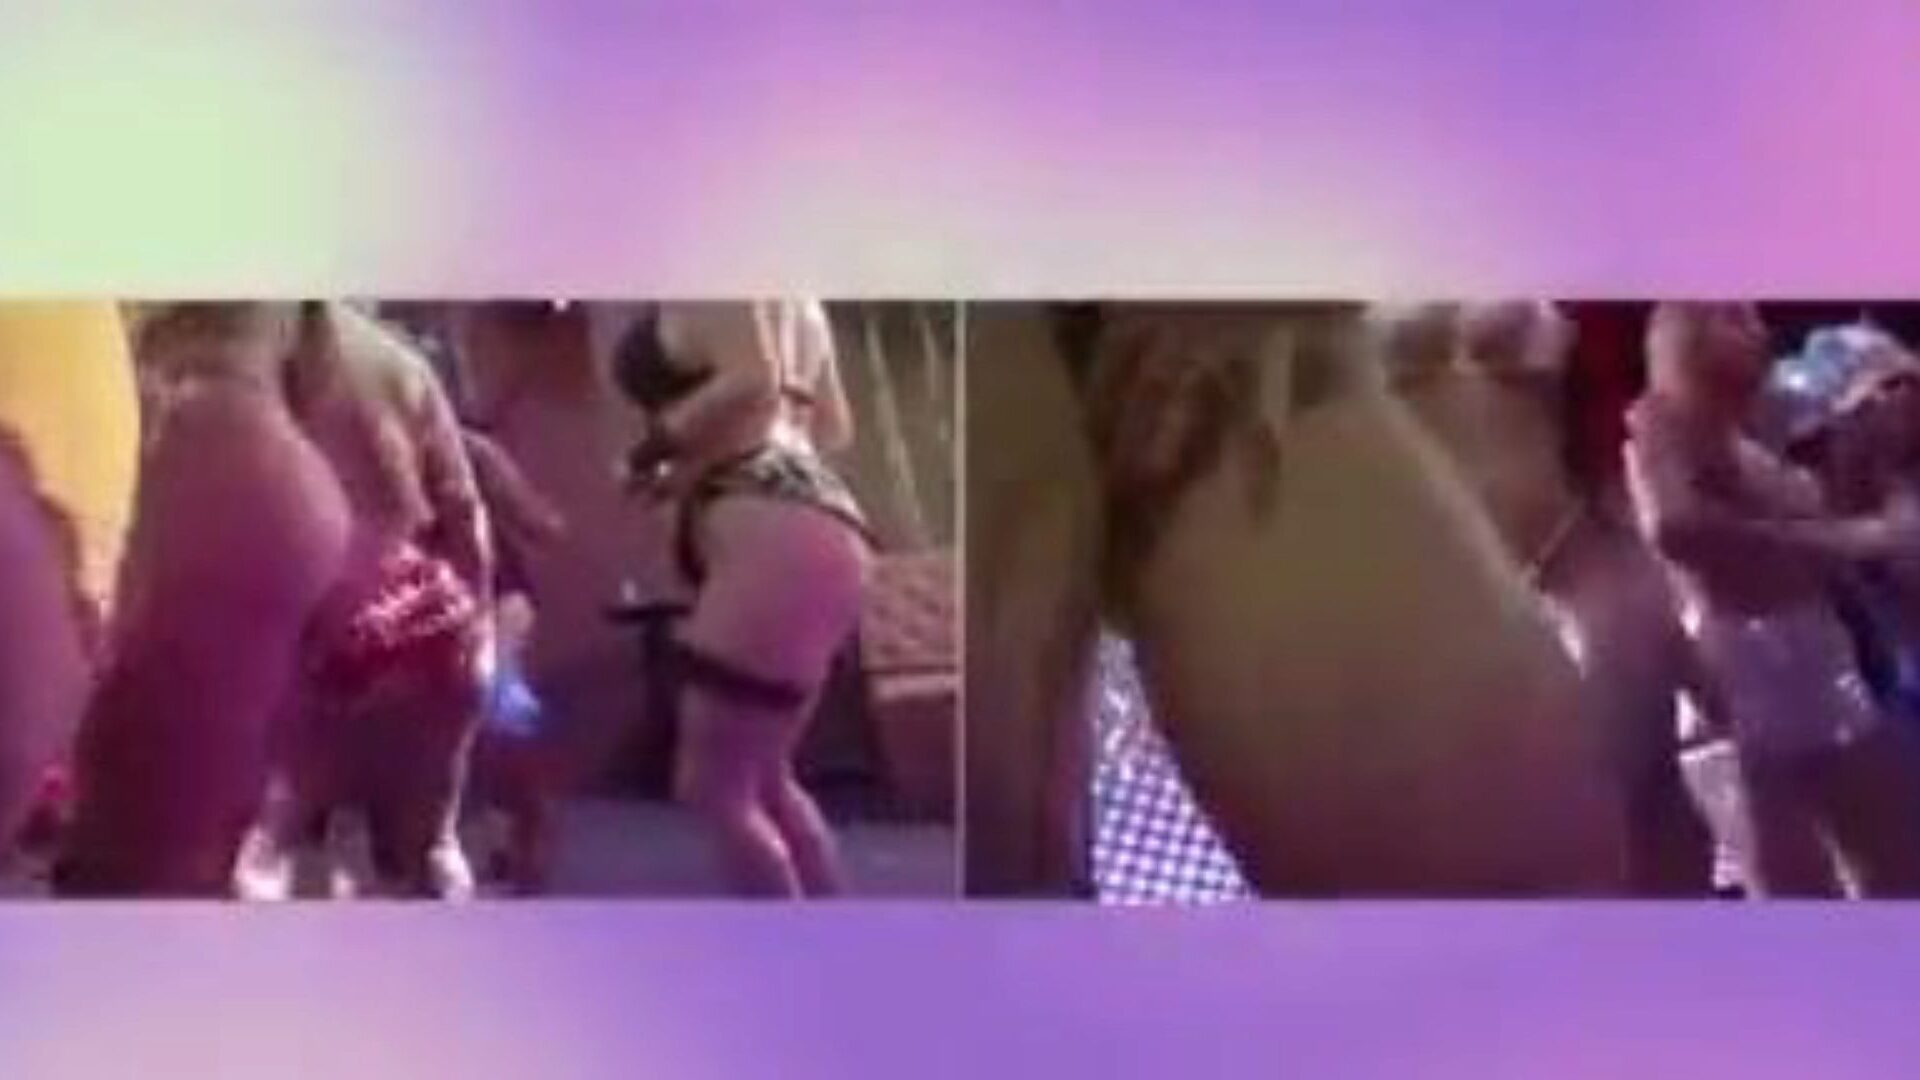 狂欢节brasilerinha 4k，免费的奶操他妈的色情视频0f观看狂欢节brasilerinha 4k情节在xhamster上，最大的性交管网站上有大量的免费奶子他妈的三人组和狂欢色情电影